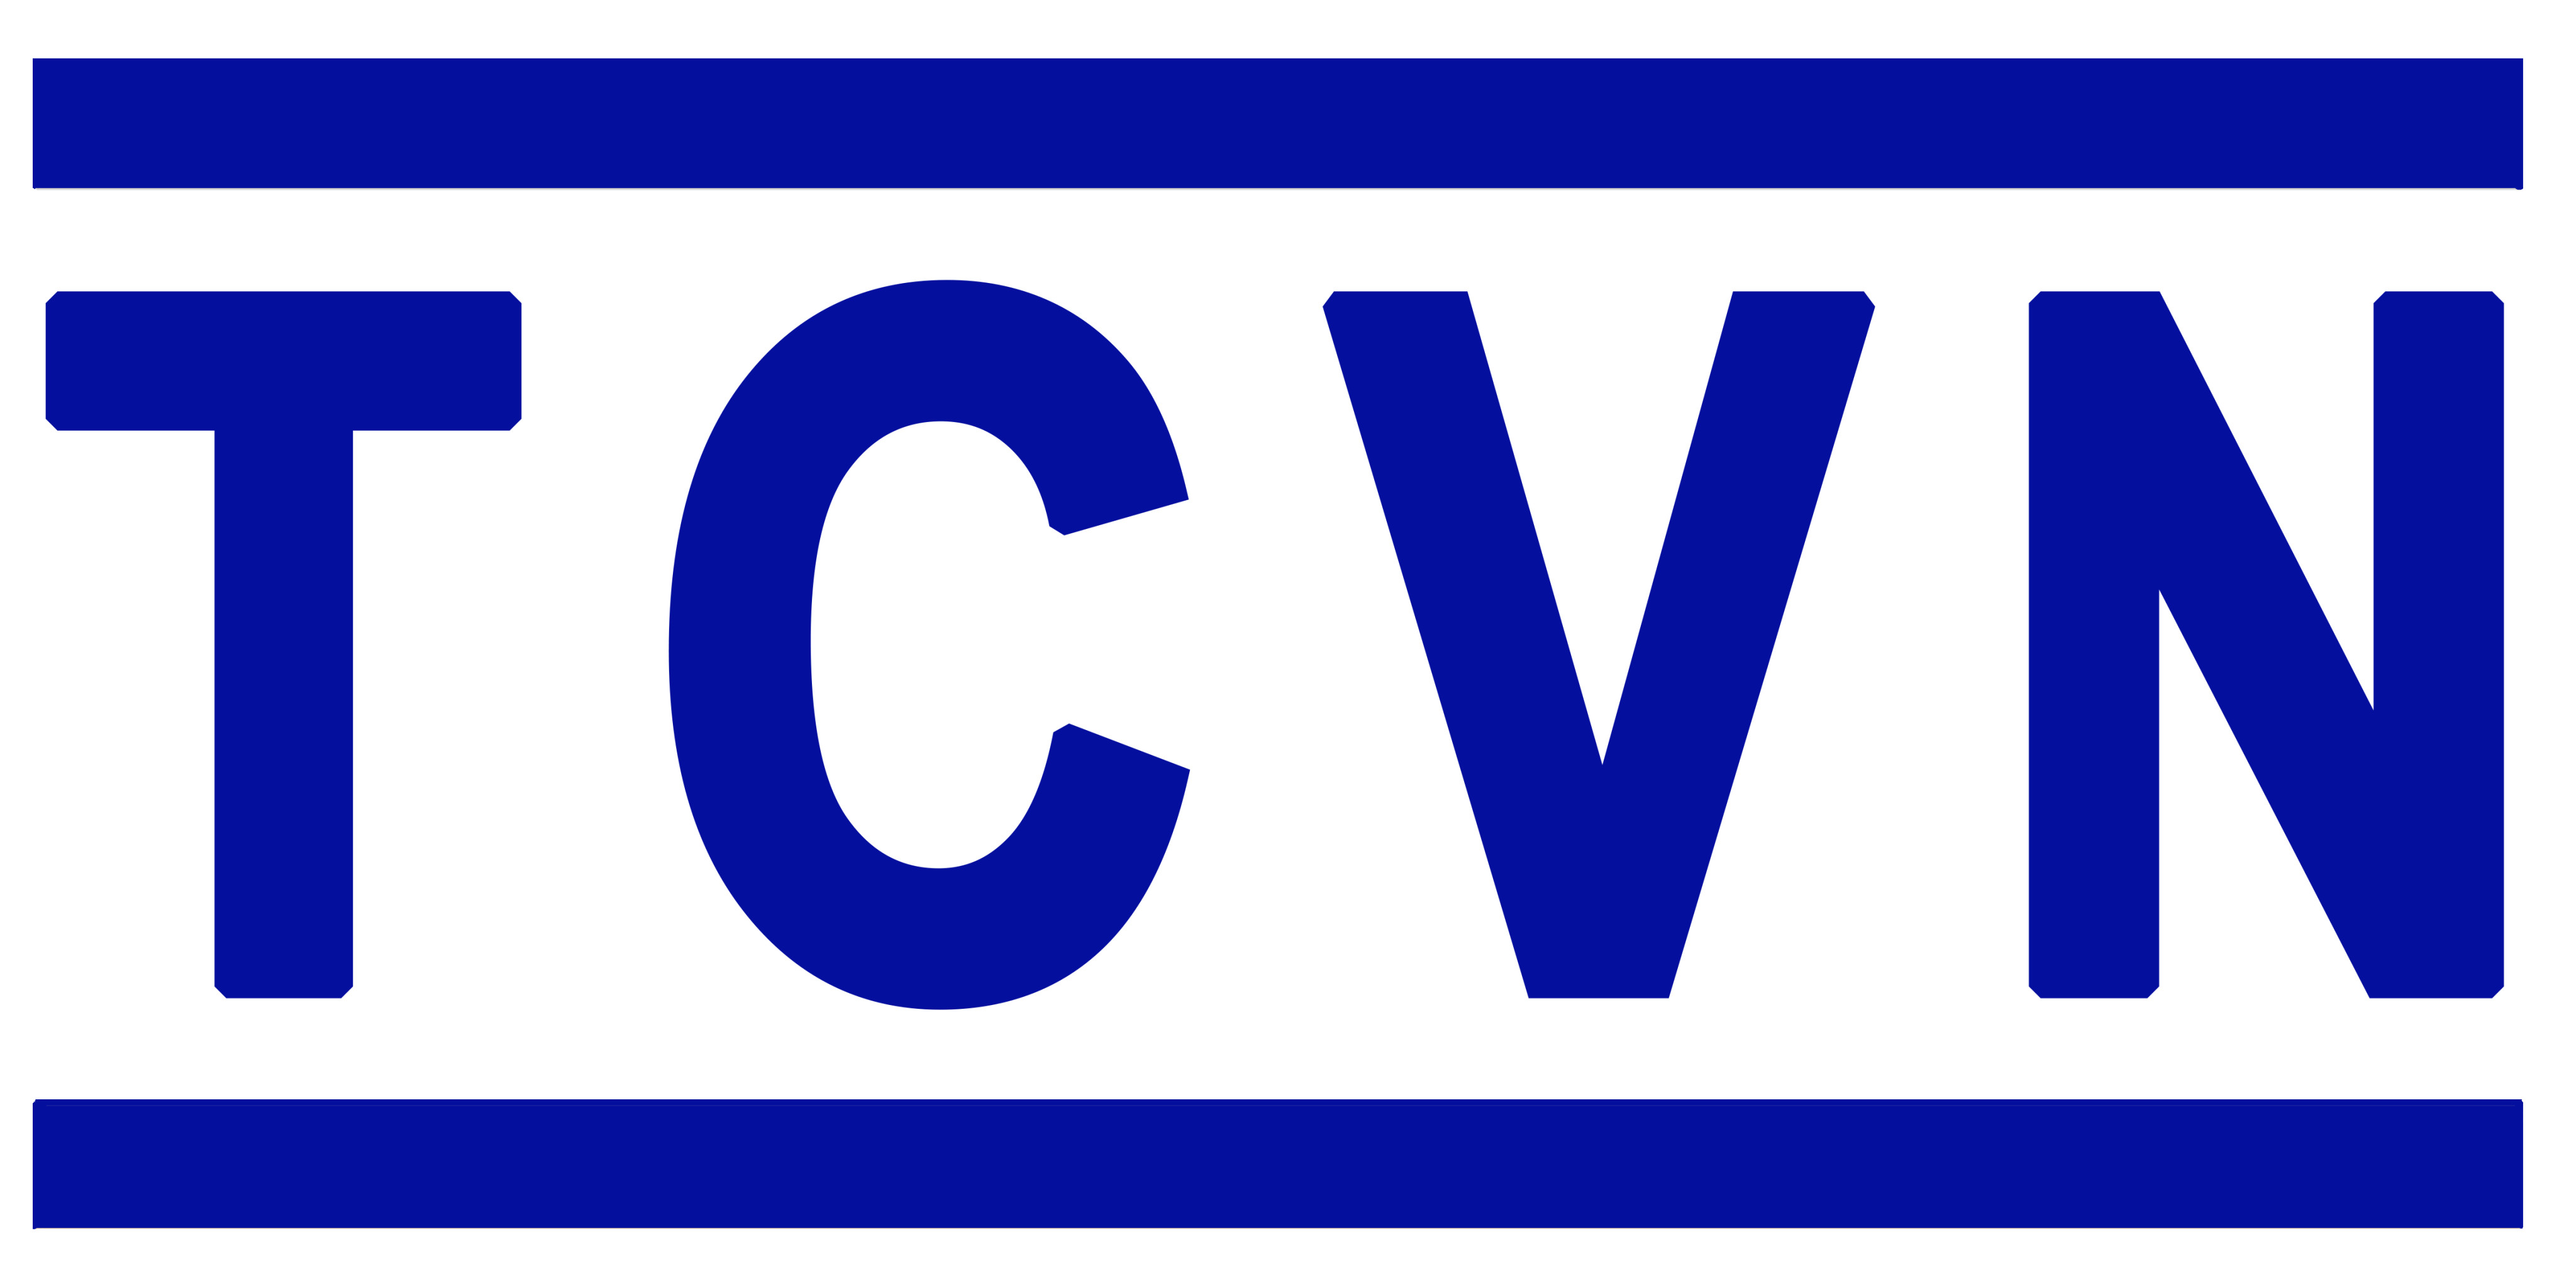 Danh mục tiêu chuẩn Quốc Gia (TCVN) công bố tháng 12 năm 2020